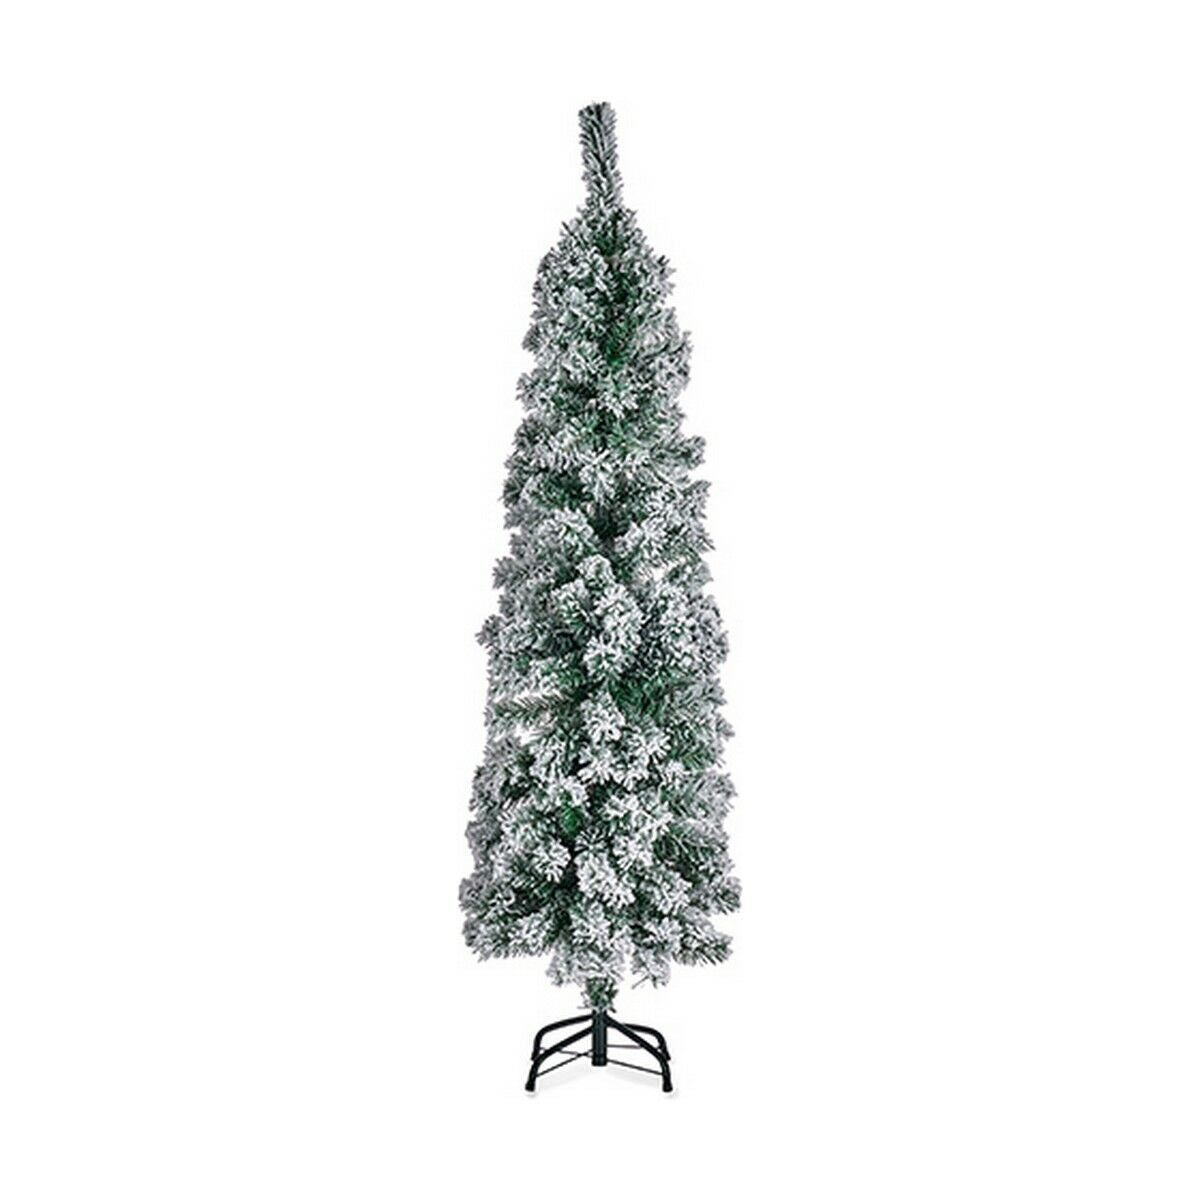 Weihnachtsbaum Metall Weiß grün Kunststoff (Ø 44 x 150 cm)